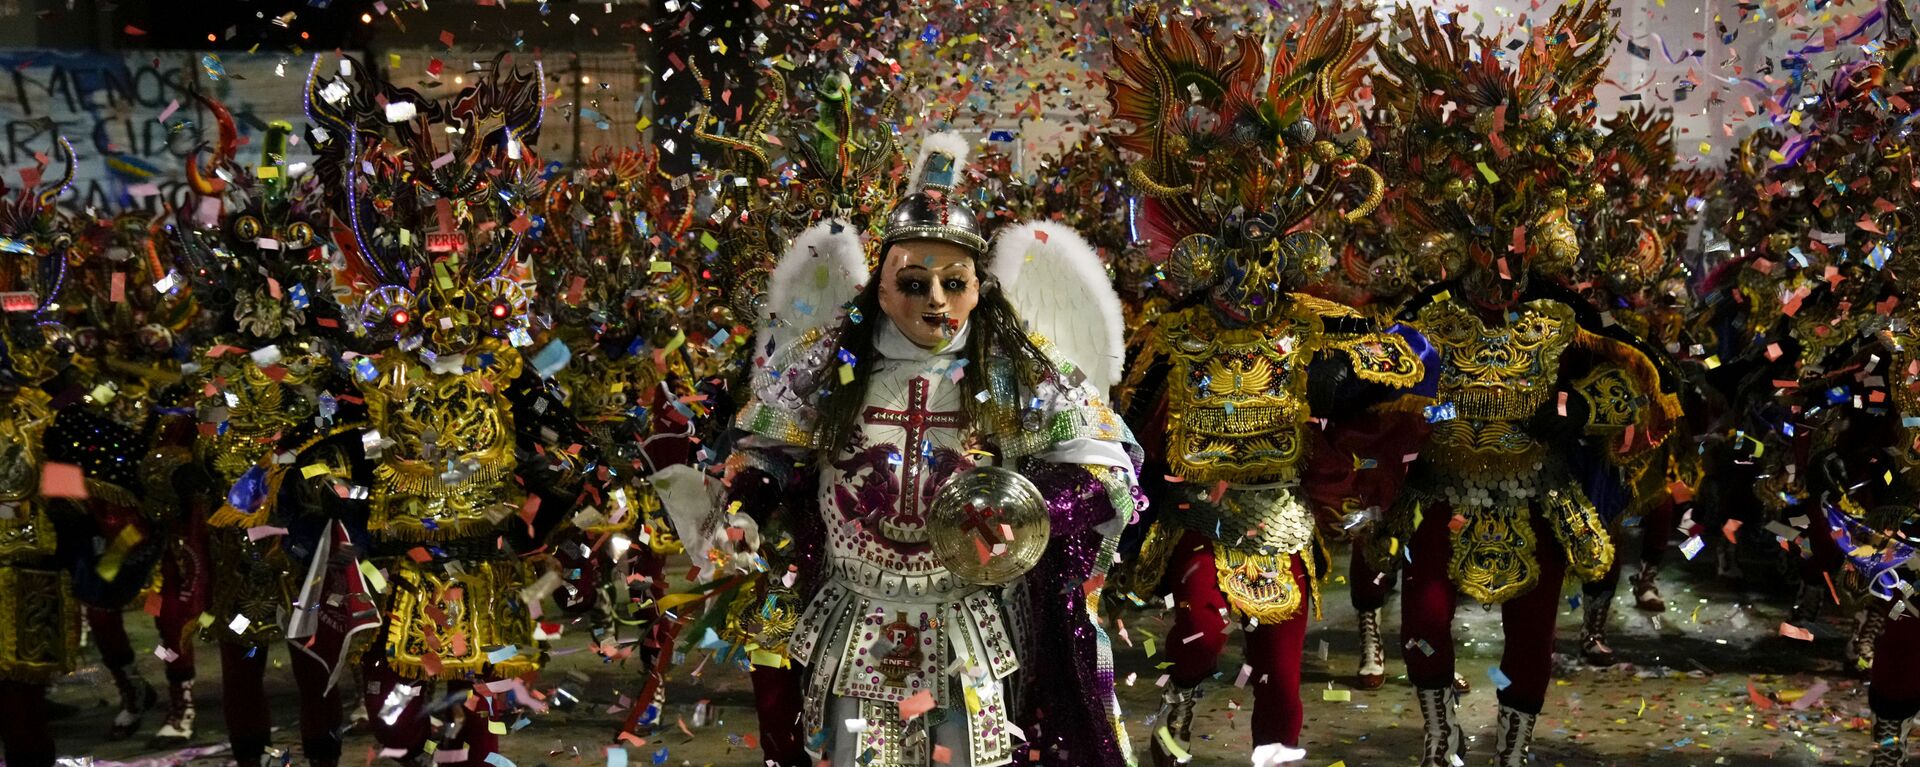 Жители Боливии исполняют танец Diablada de Oruro в Оруро - Sputnik Mundo, 1920, 10.10.2021